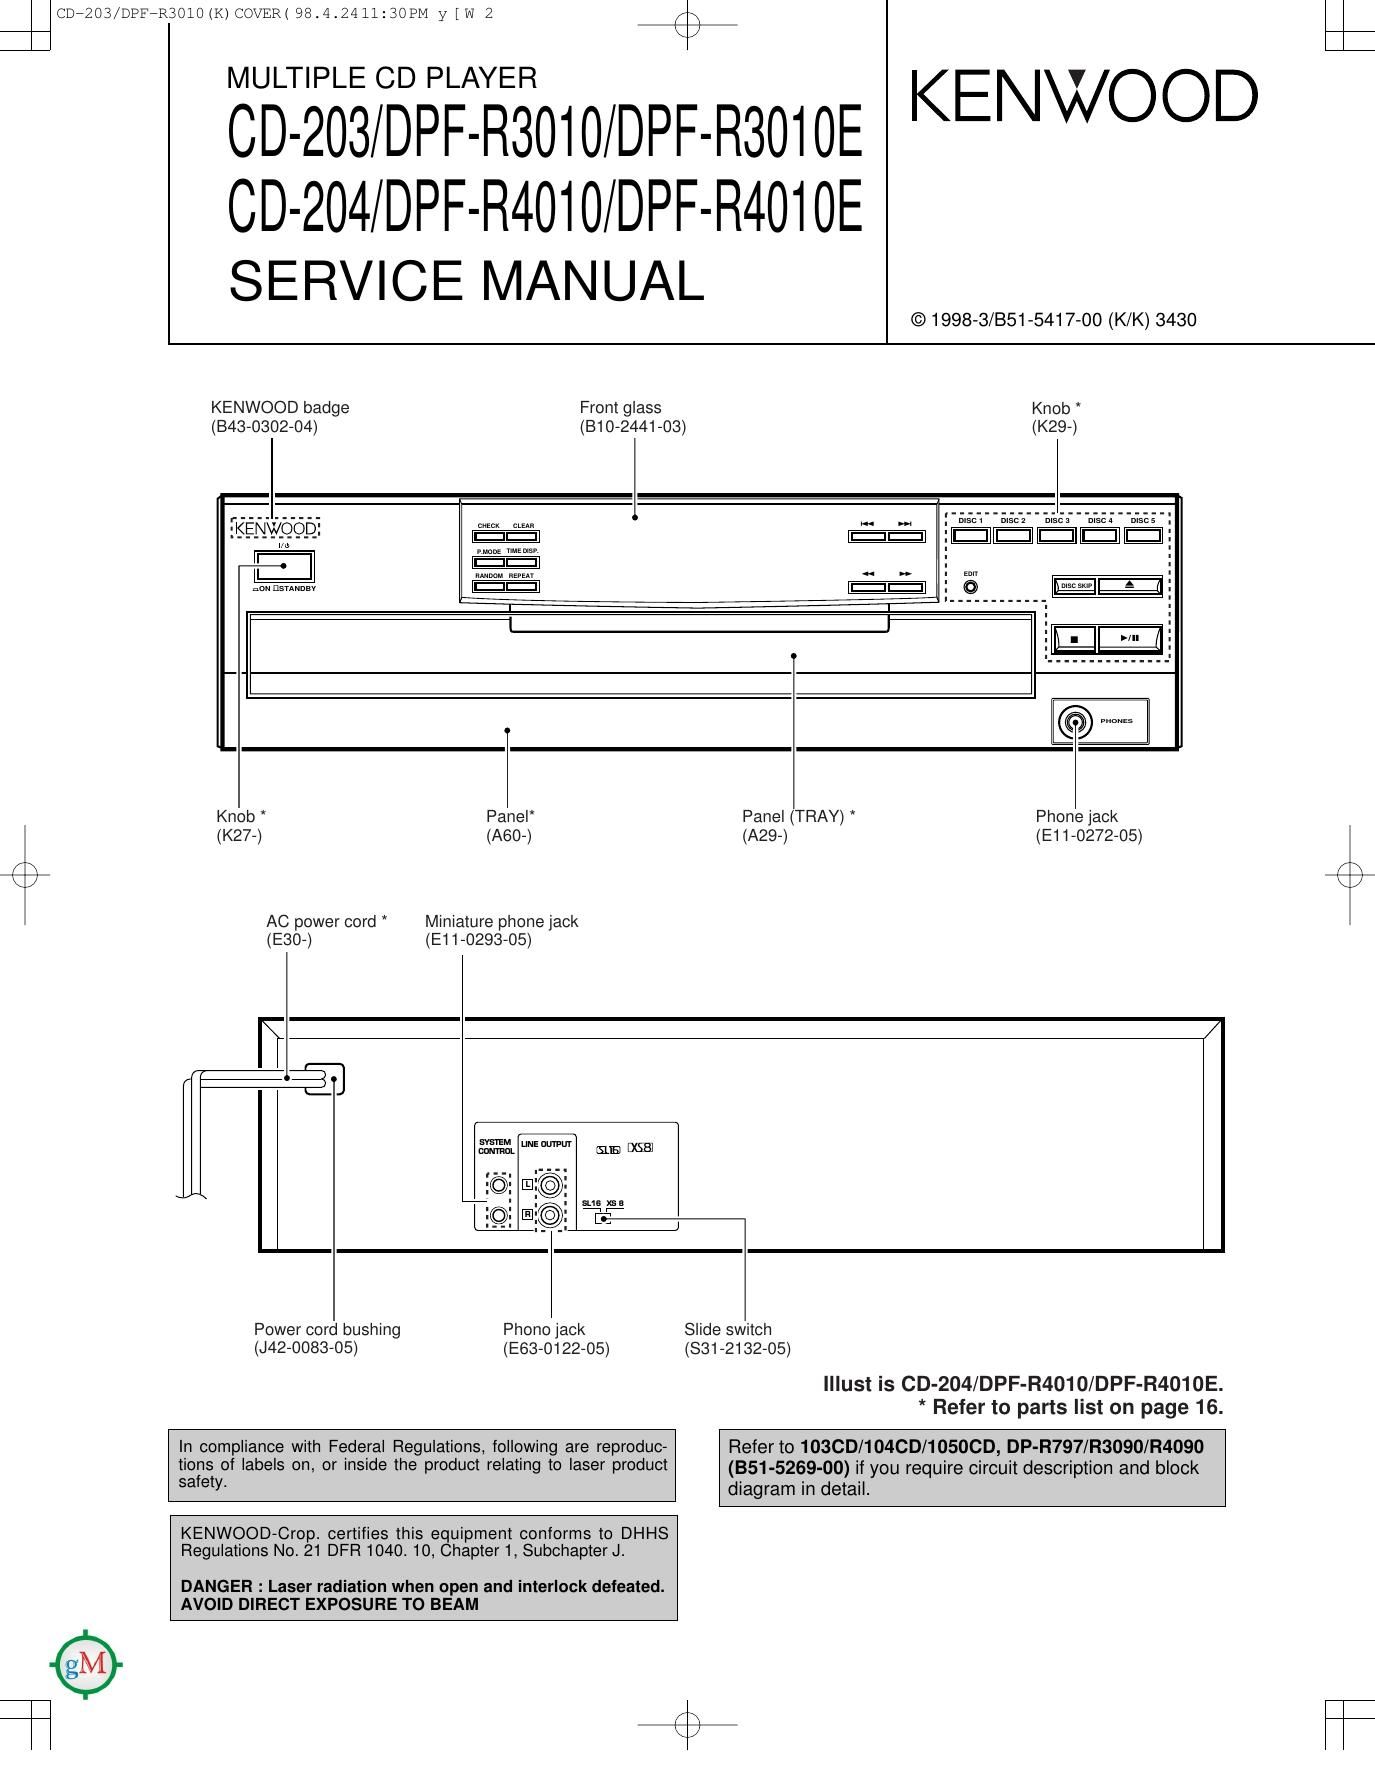 Kenwood CD 203 Service Manual